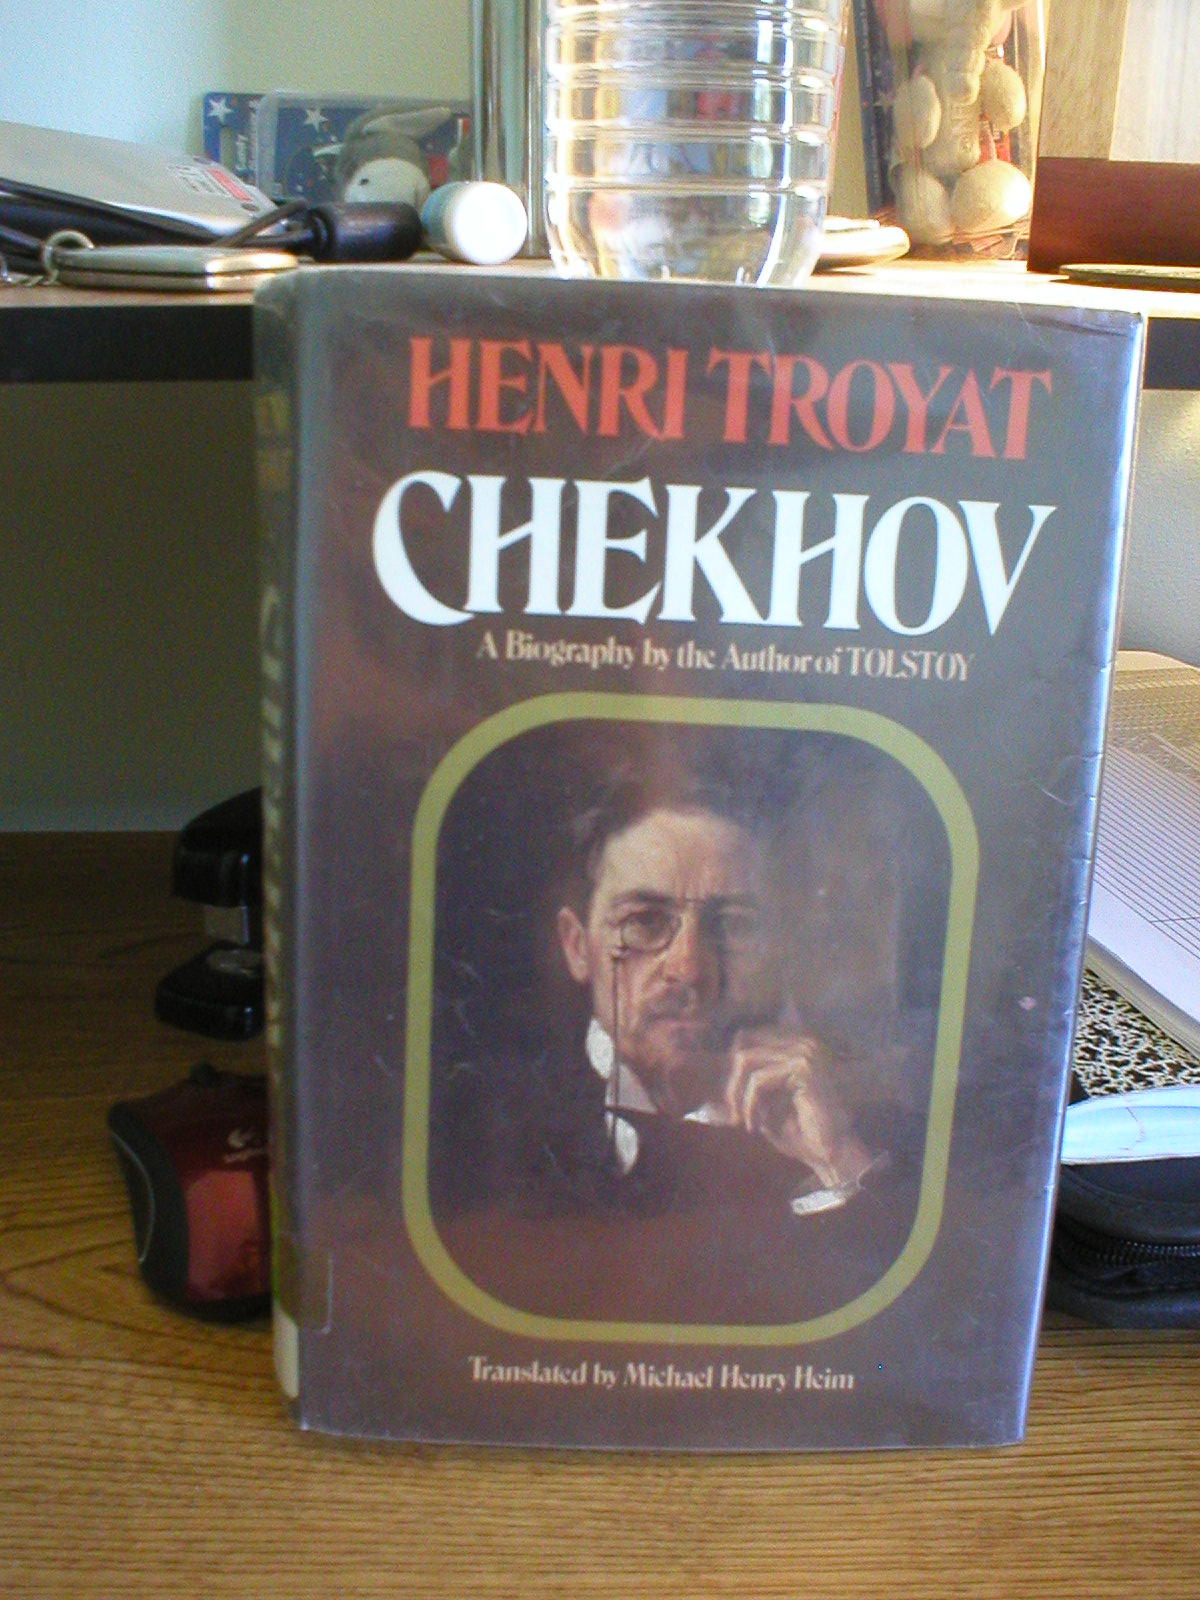 [Chekhov.JPG]